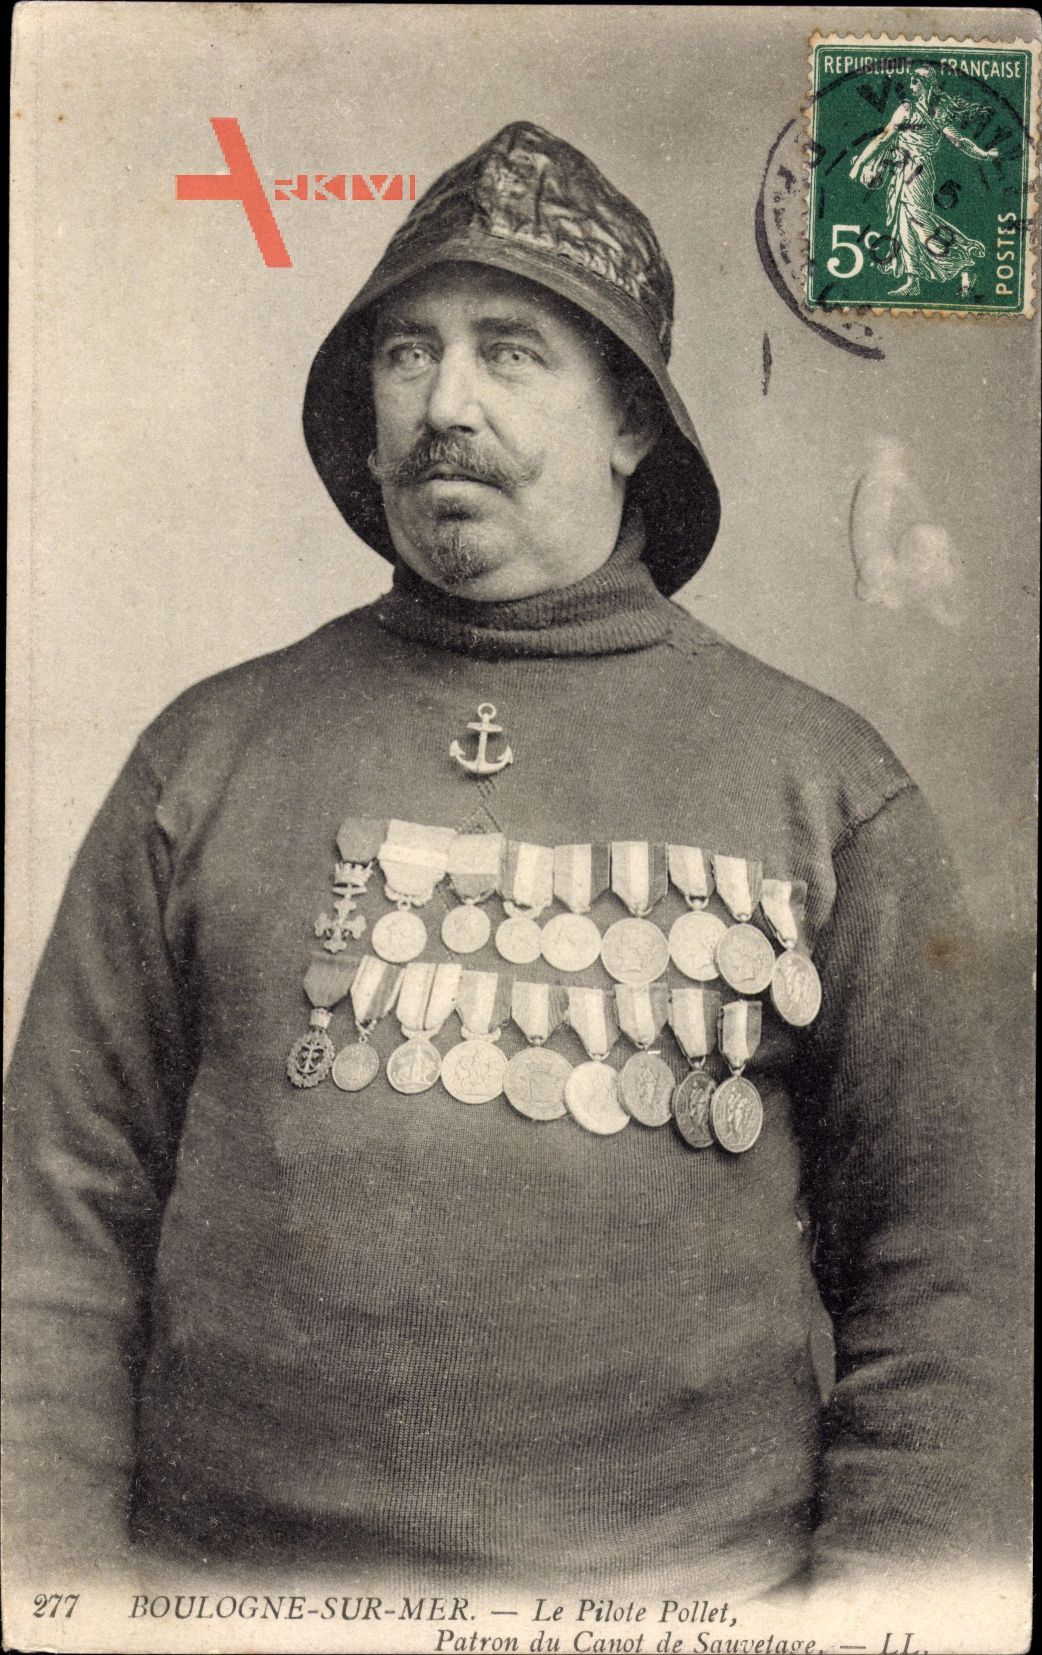 Portrait des Lotsen Pollet - Kapitain eines Rettungsbootes in Boulogne sur Mer Pas de Calais um 1910